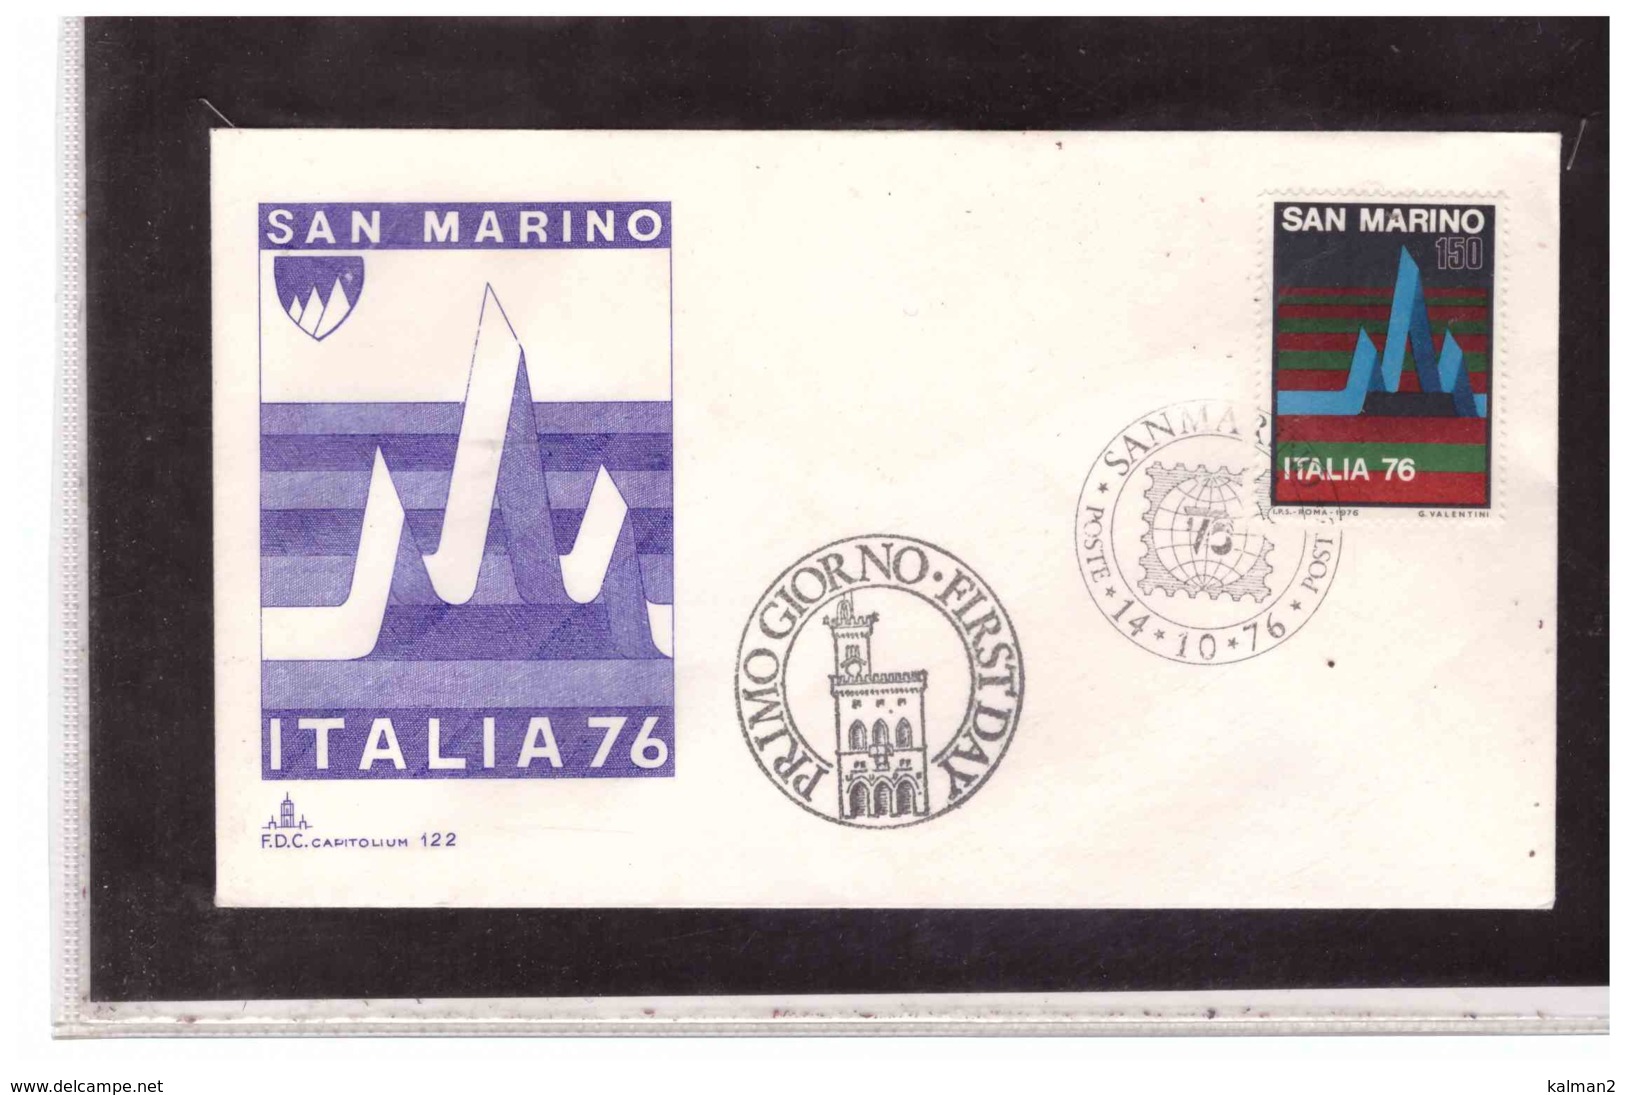 FDC5369   -   SAN MARINO  14.10.1976   /   FDC  EXPO "ITALIA 76 "  /   CAT.UNIFICATO  970 - Philatelic Exhibitions